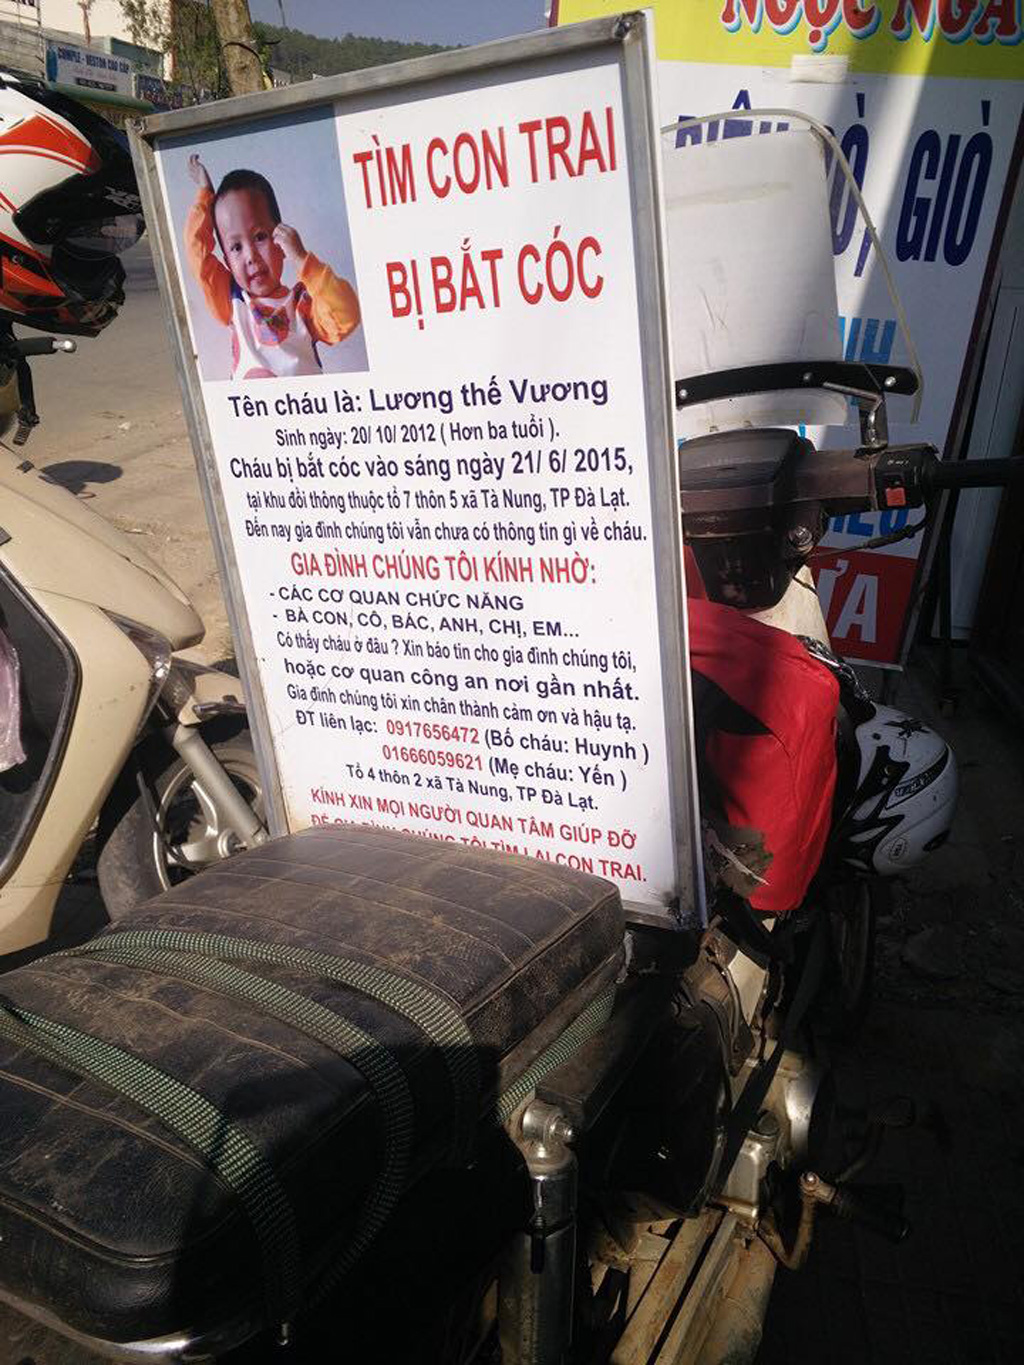 Suốt hai ngày nay, trên khắp các trang mạng xã hội, hình ảnh anh Lương Thế Huynh (42 tuổi) dùng xe máy chạy qua nhiều tỉnh thành để tìm con trai tên Lương Thế Vương (3 tuổi), bị mất tích tại thôn 7, xã Tà Nung, TP. Đà Lạt (Lâm Đồng)